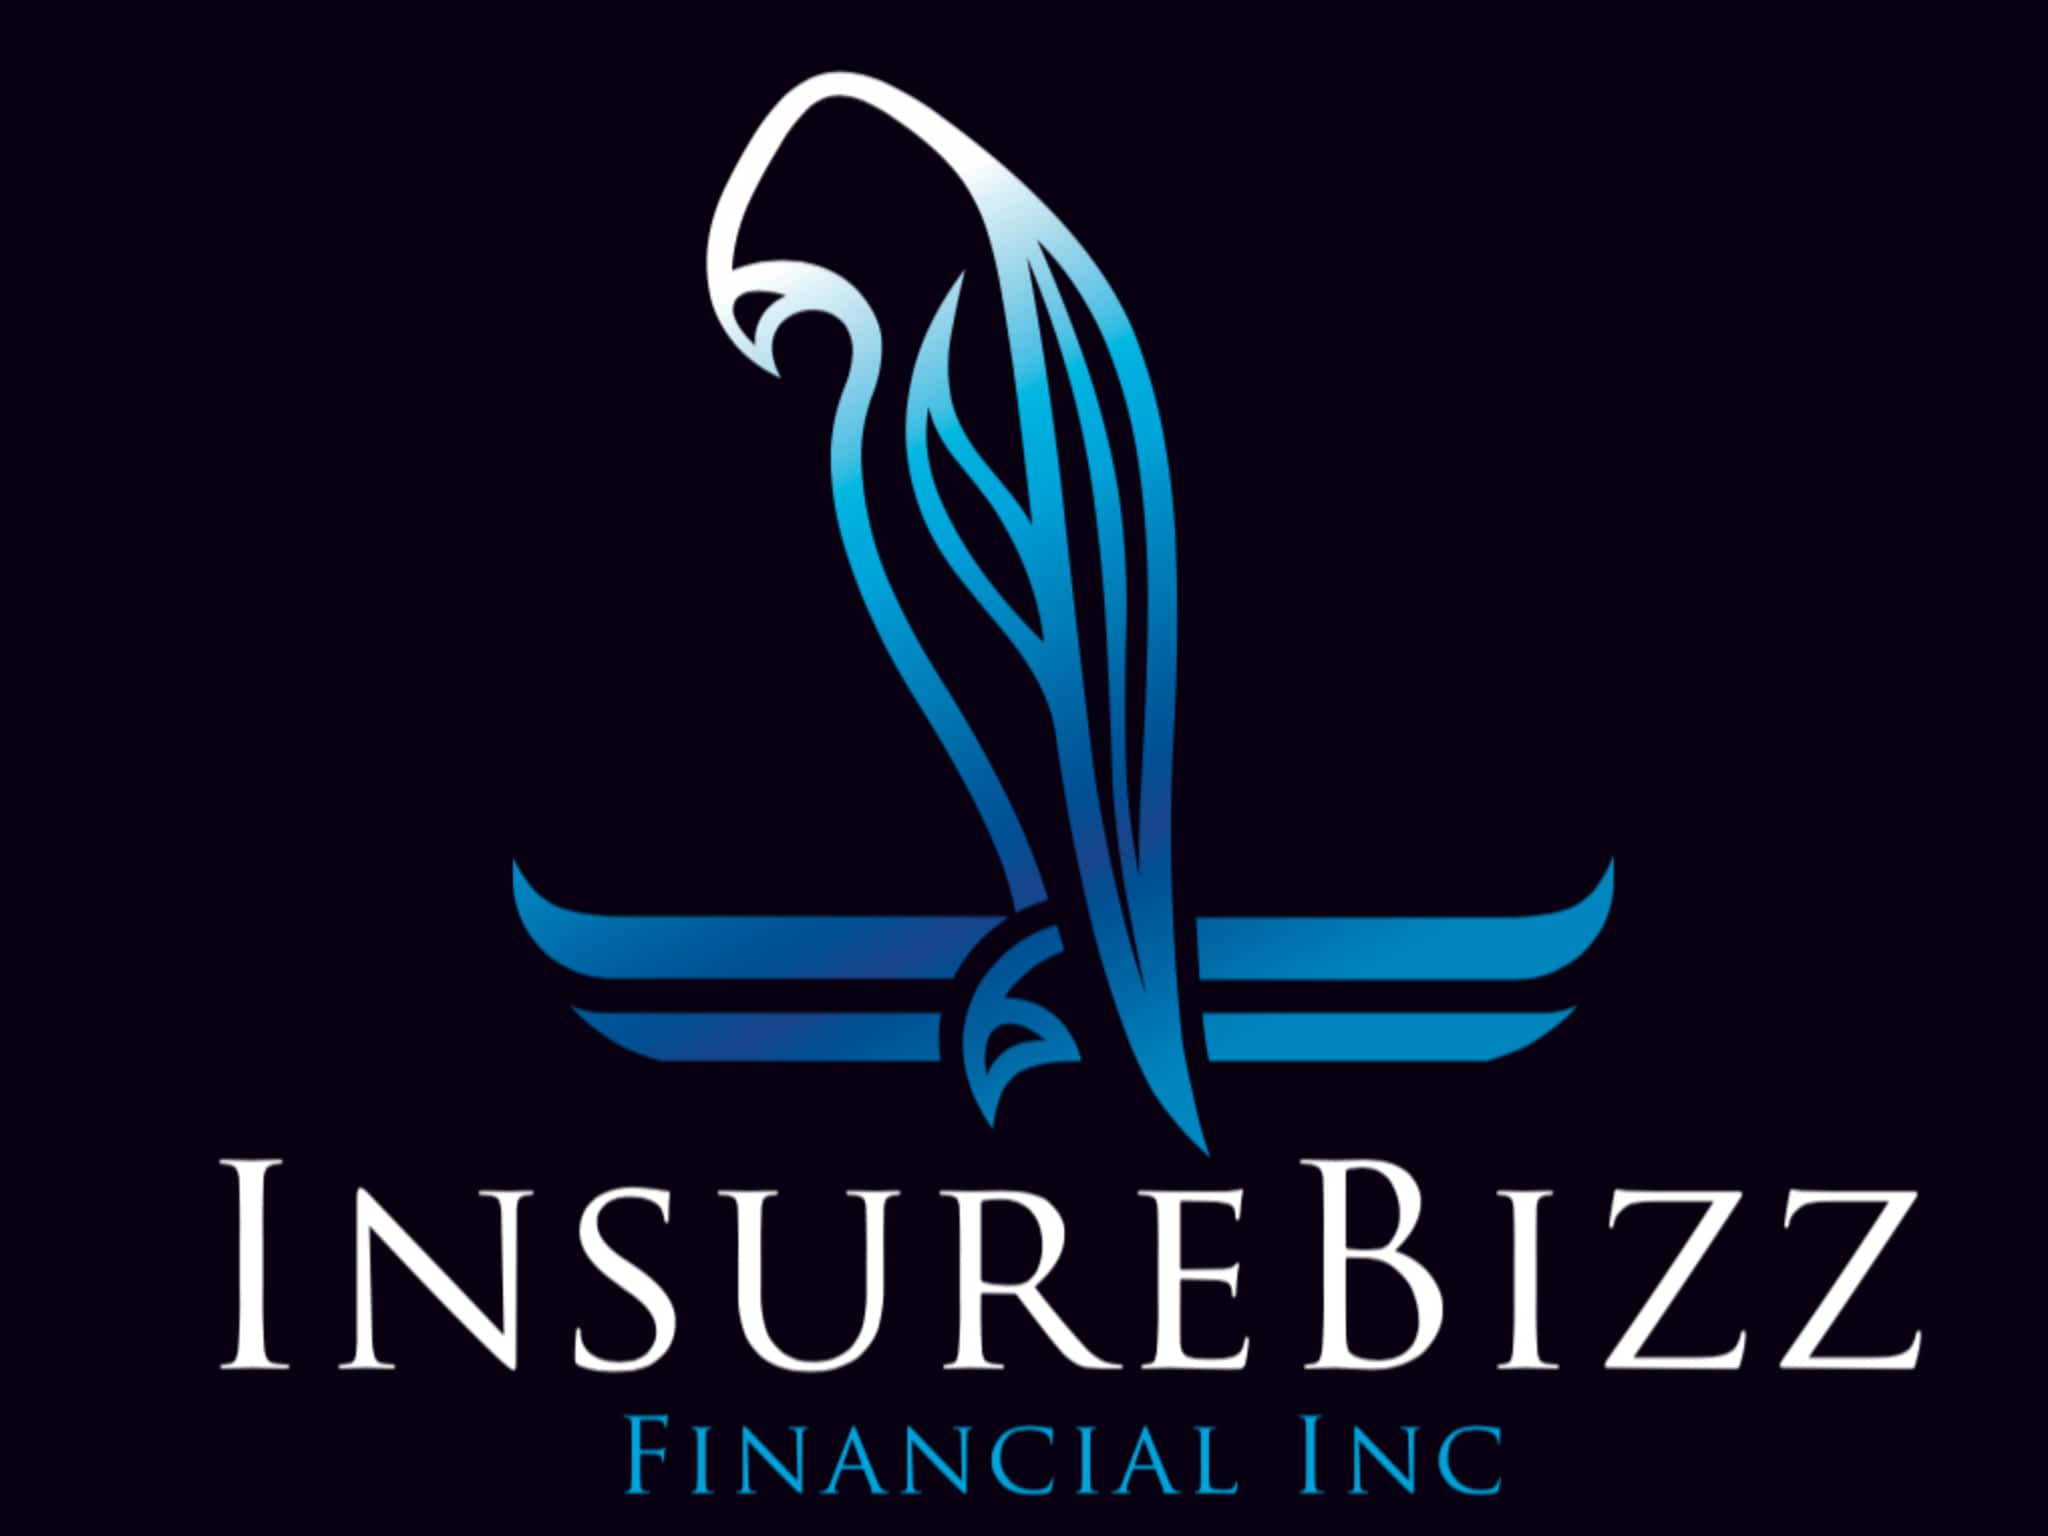 photo InsureBizz Financial Inc